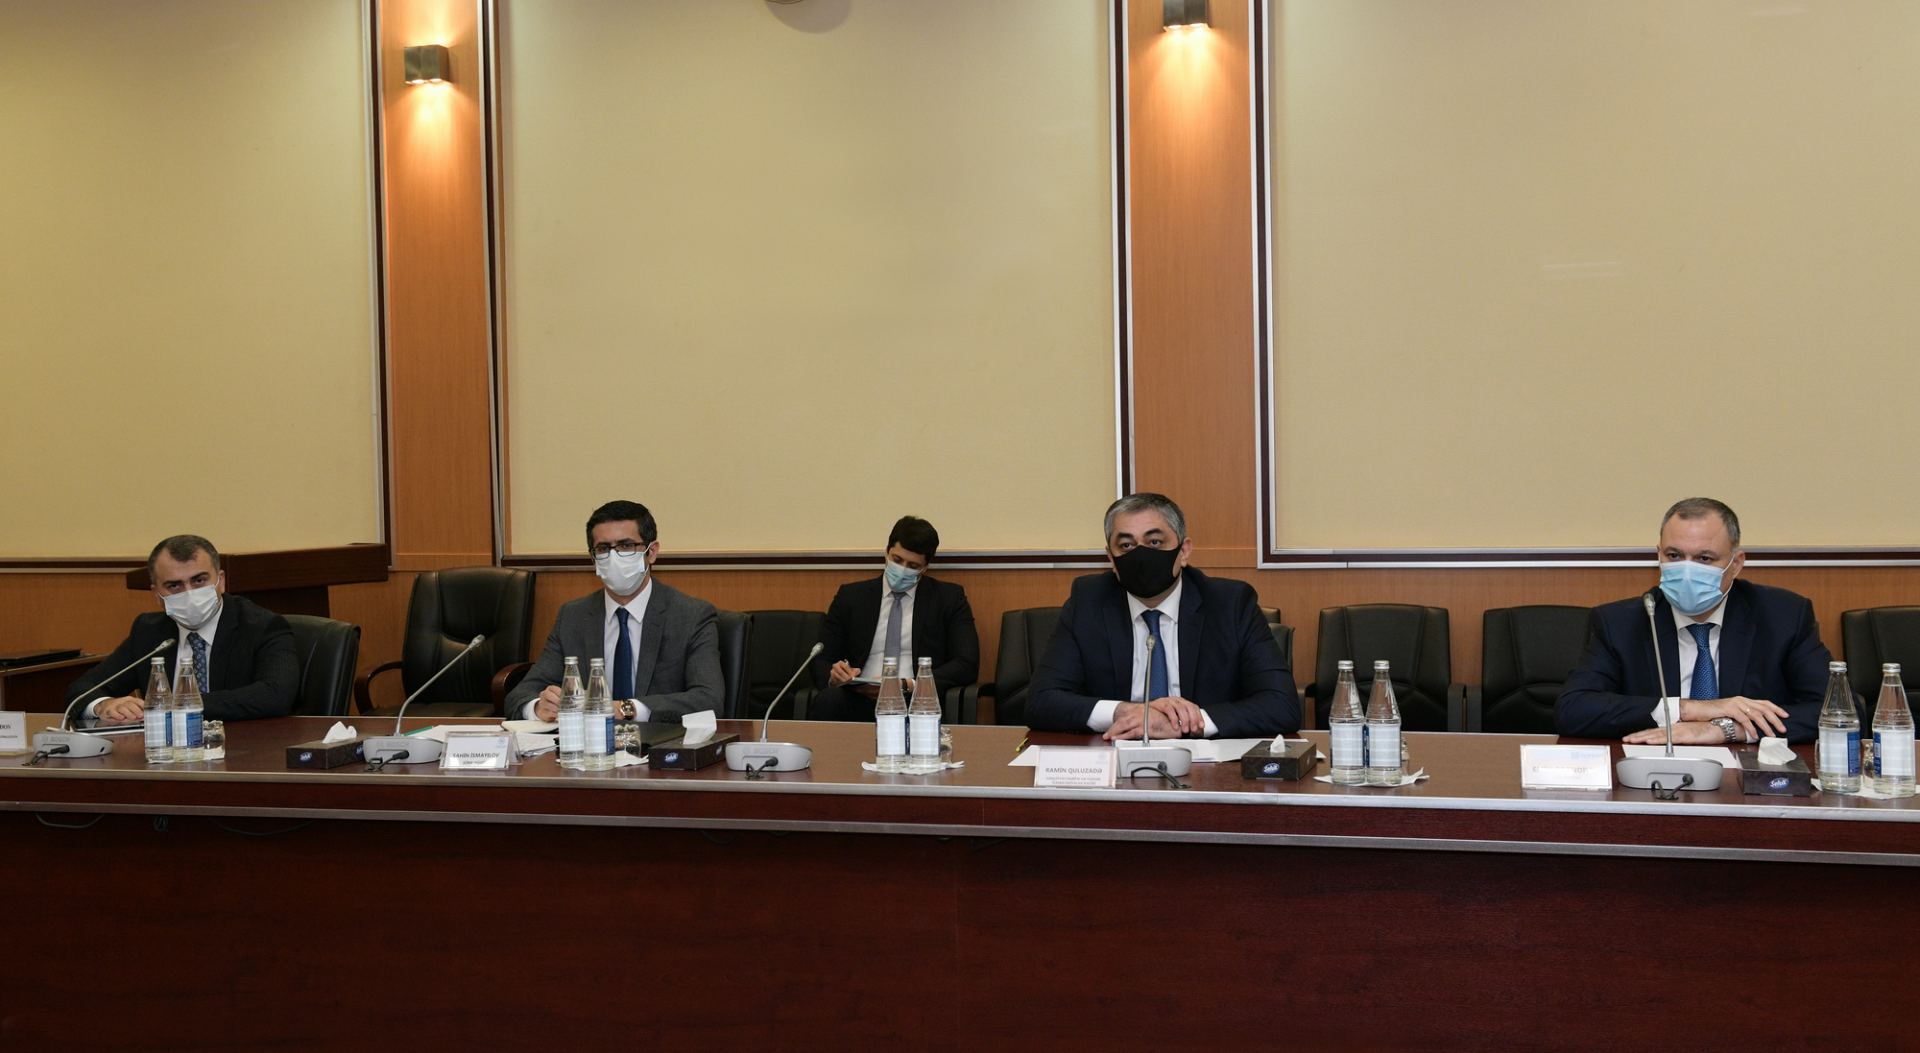 Почтовые службы Турции и Азербайджана реализуют новые проекты - министр транспорта (ФОТО) - Gallery Image